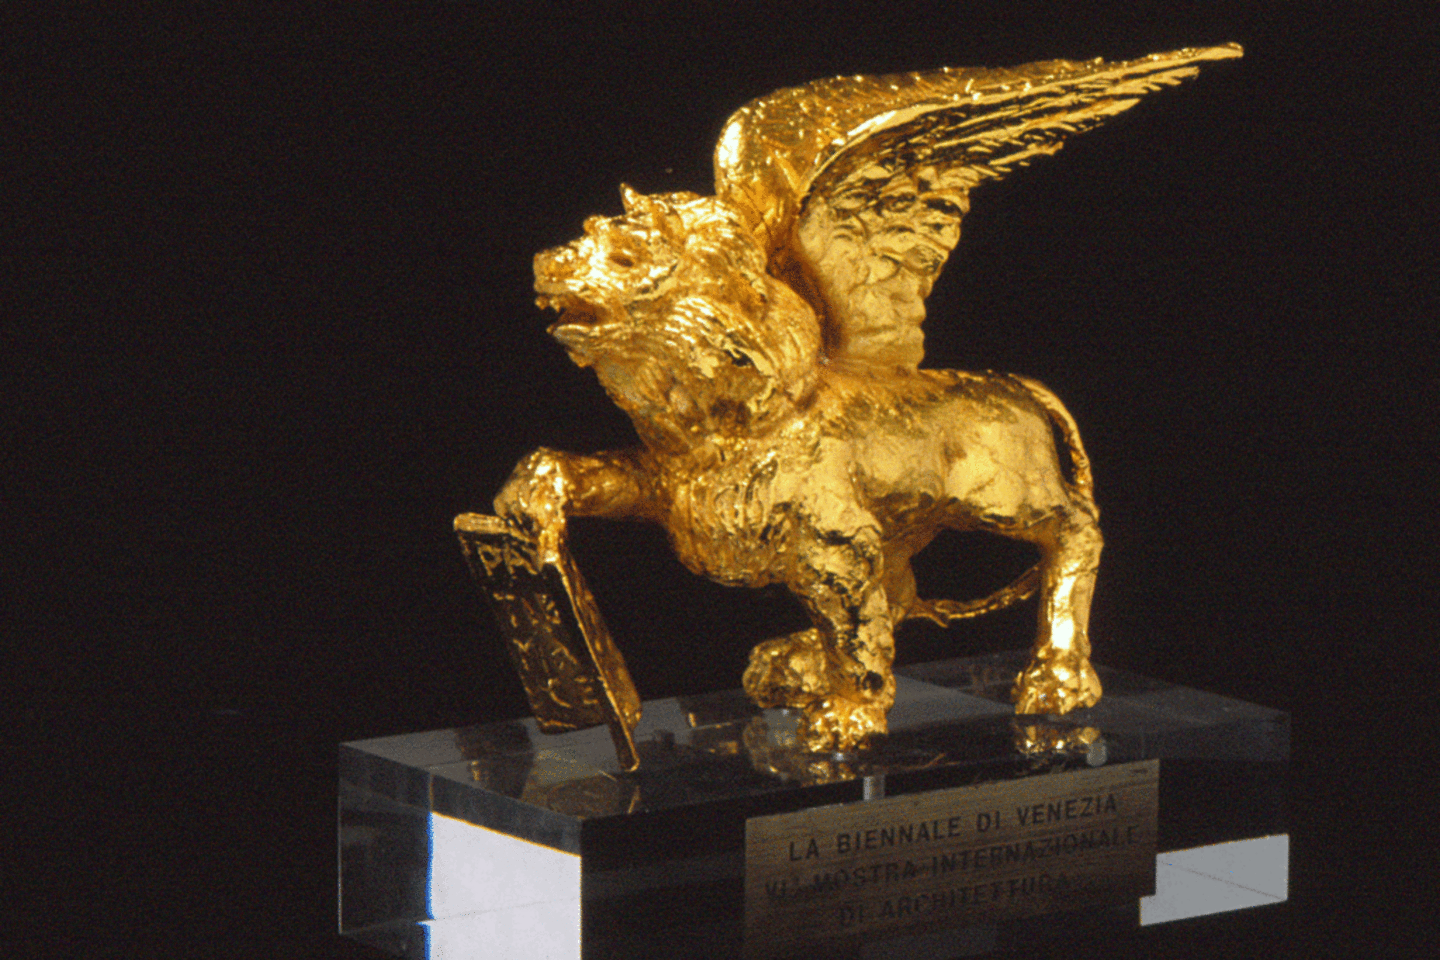  Venecijos kino festivalio simbolis - sparnuotas liūtas.